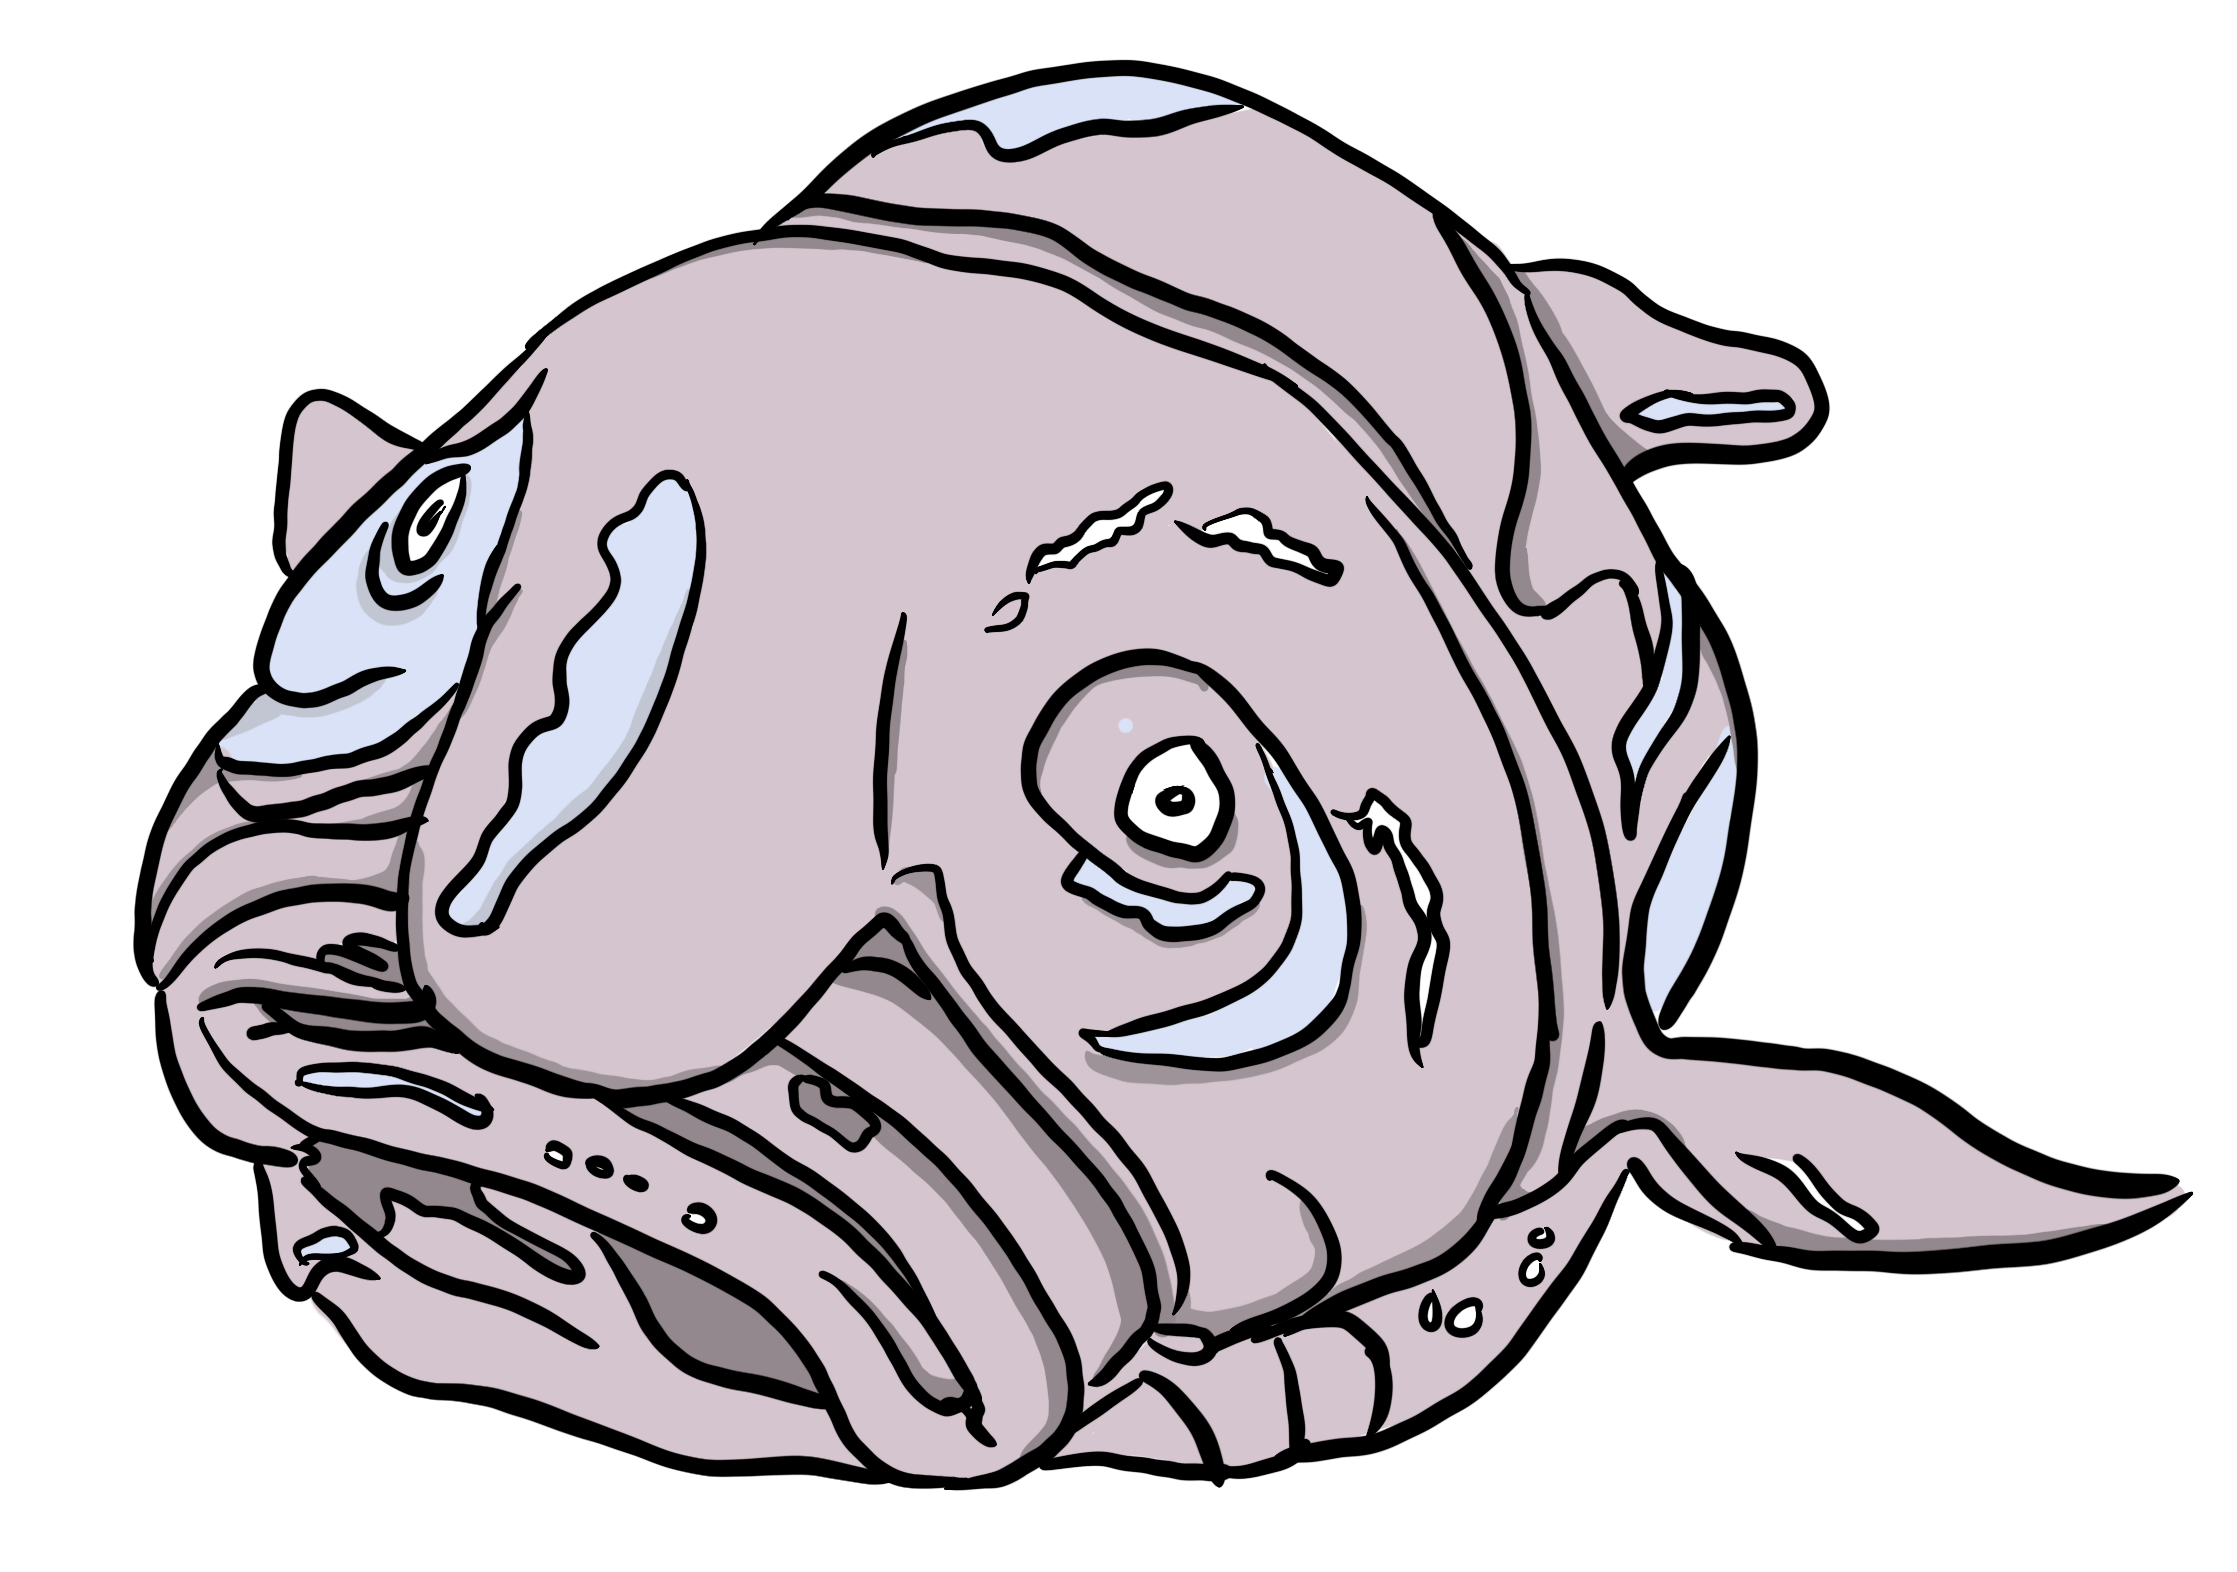 Ugly blob fish